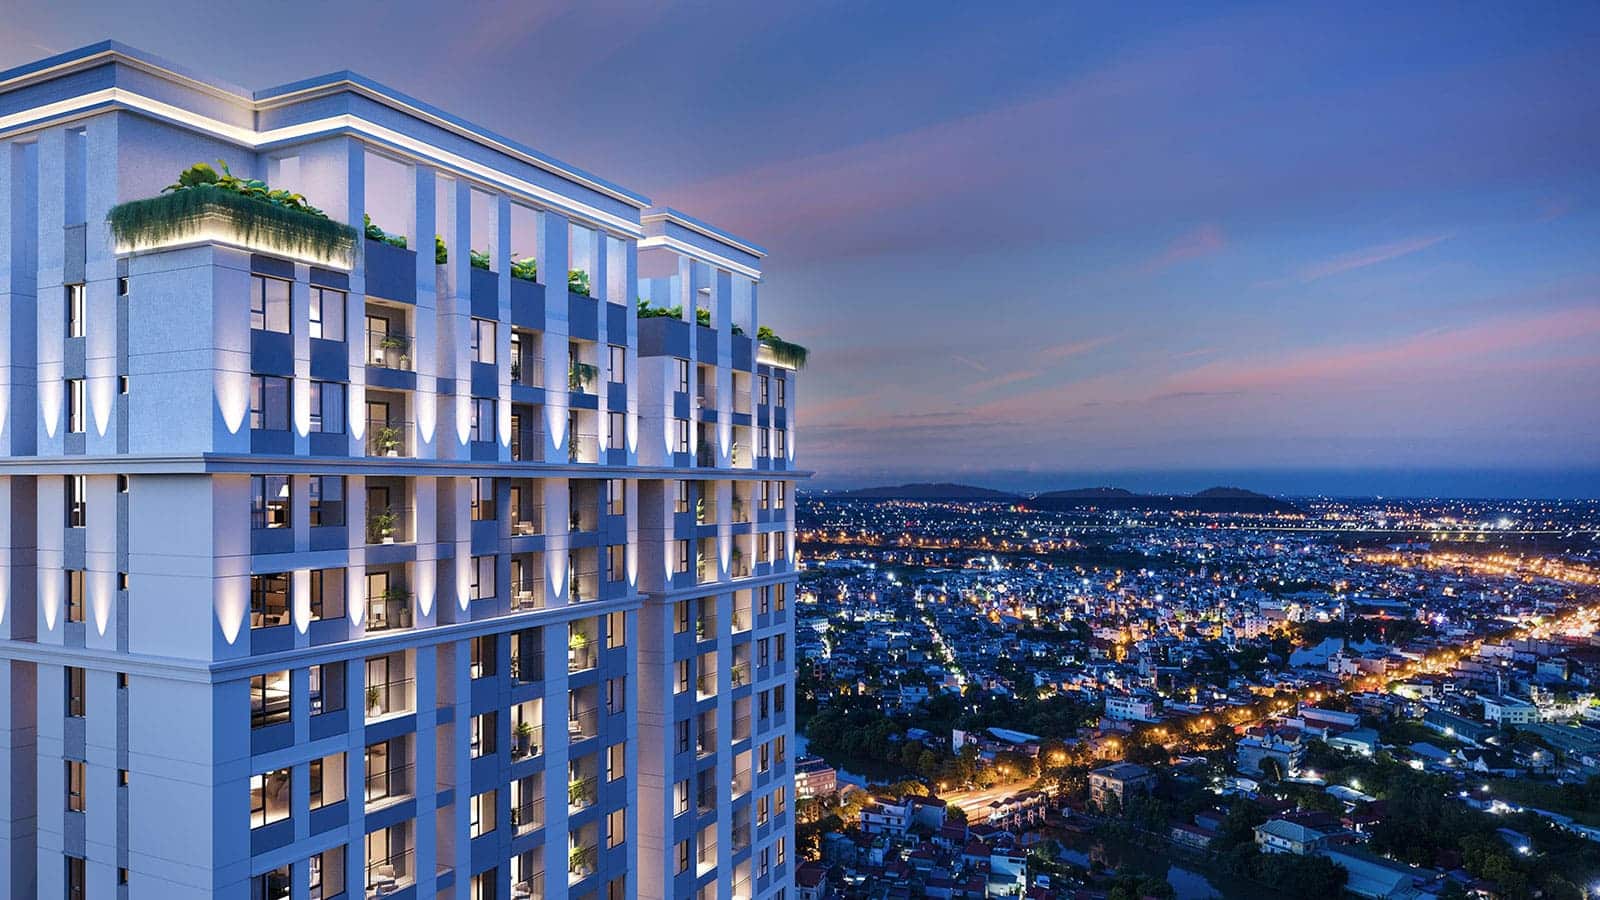 Phối cảnh căn hộ chung cư cao cấp Gem Park Hải Phòng được phát triển bởi N.H.O.